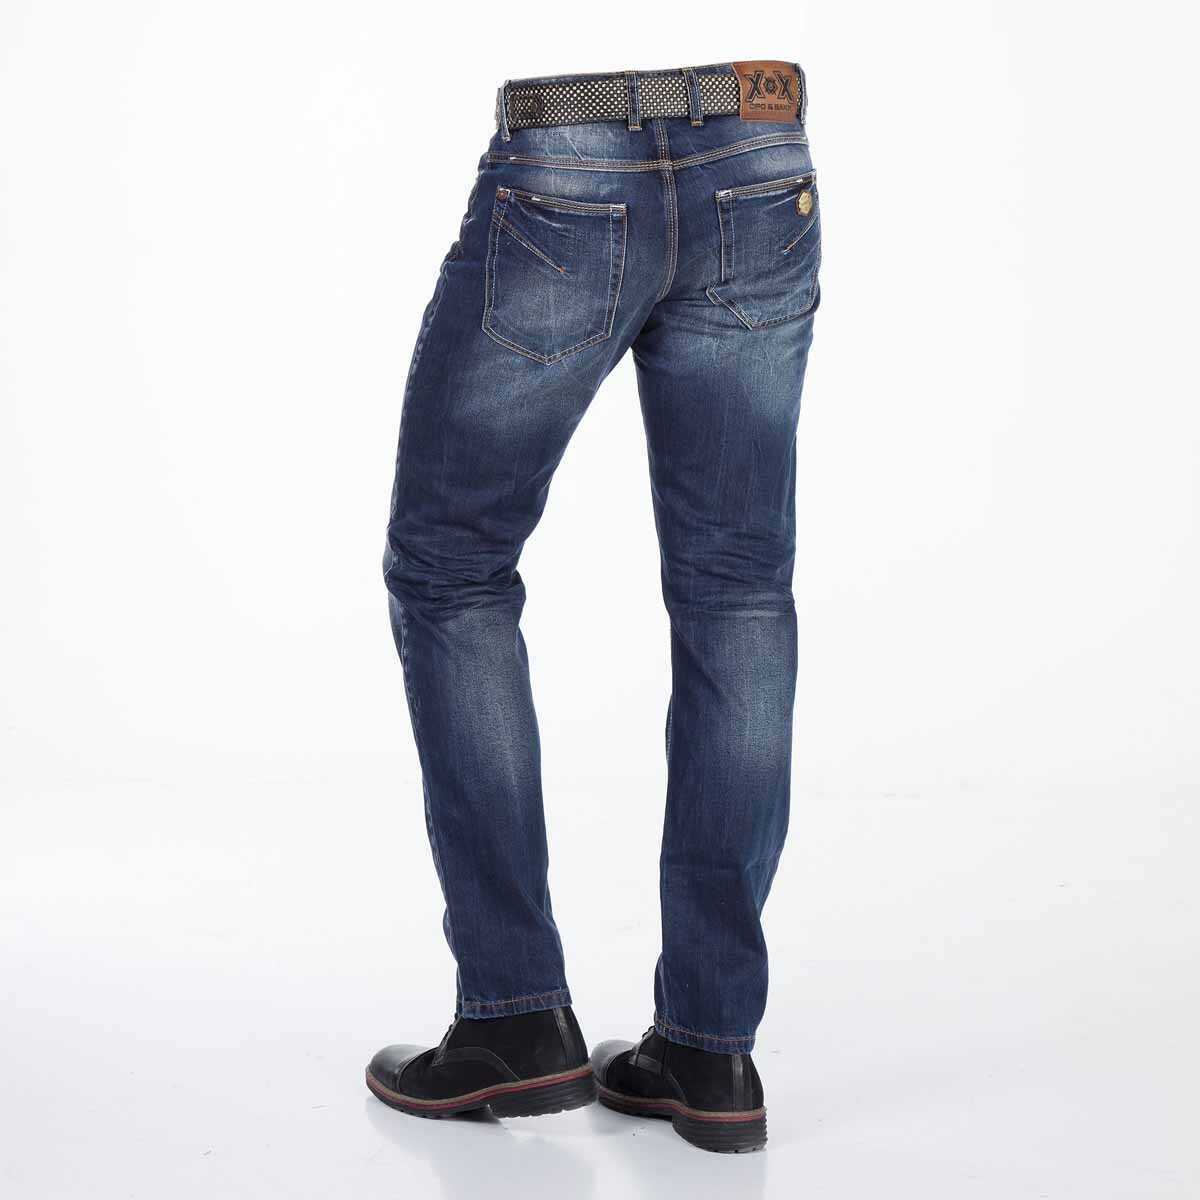 CD331 Herren bequeme Jeans mit dezenter Waschung Straight Fit - Cipo and Baxx - Herren Jeans - Letzte Chance! -